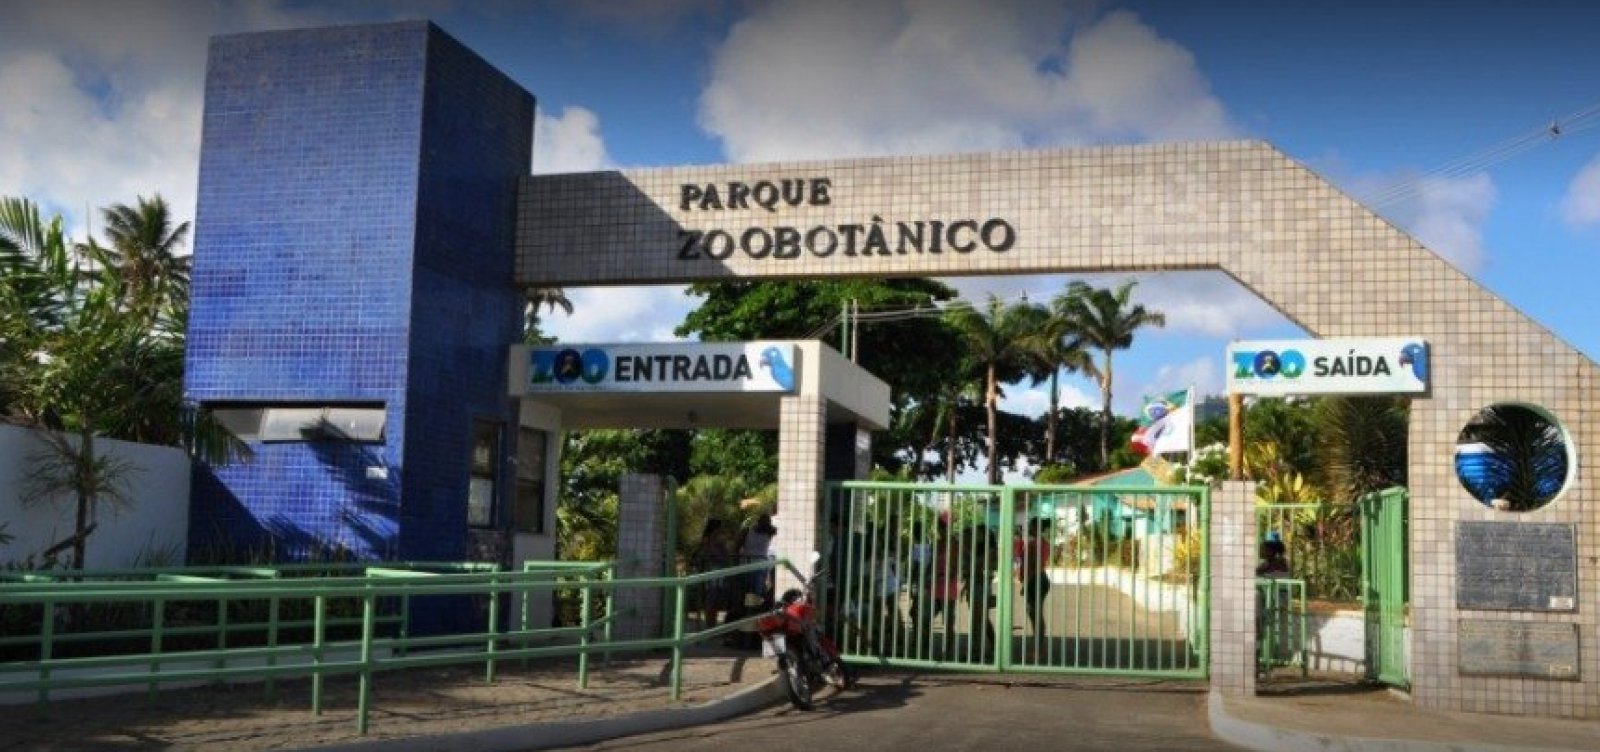 Zoológico de Salvador deve cobrar entrada de R$7,50 no primeiro ano de concessão 